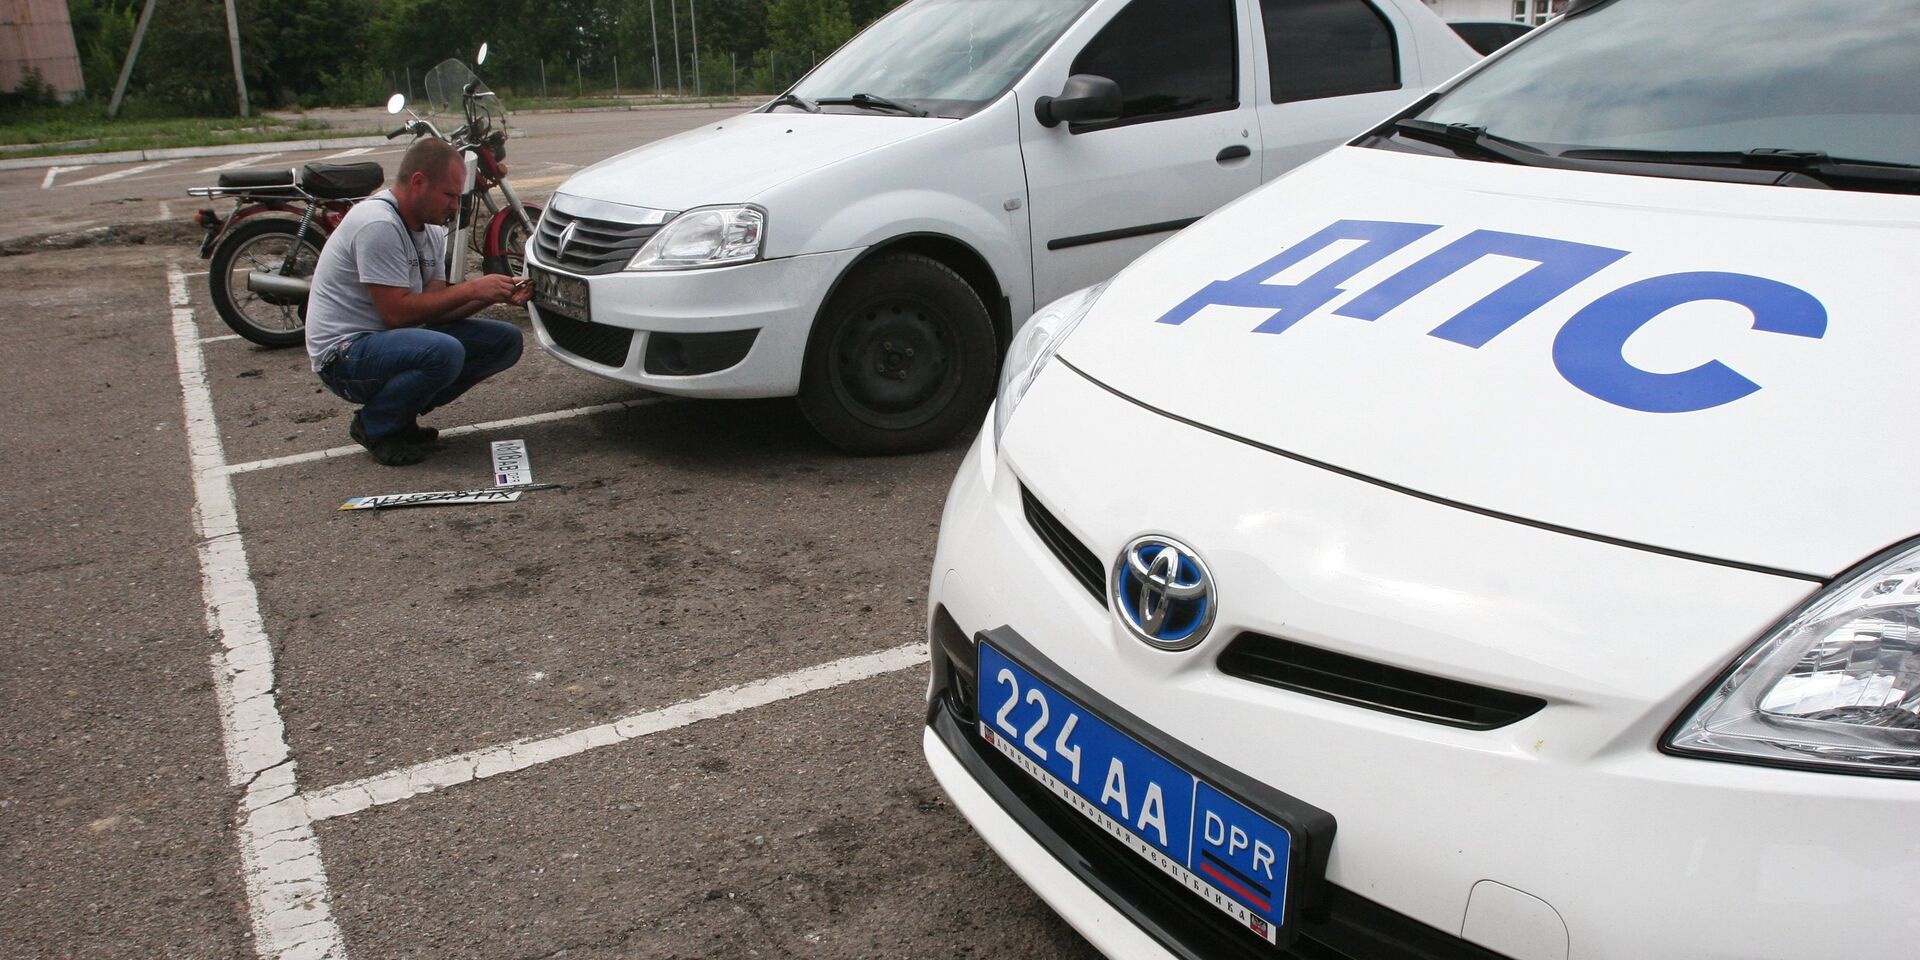 Мужчина устанавливает номерной регистрационный знак Донецкой народной республики на автомобиль в Донецке - ИноСМИ, 1920, 23.11.2022